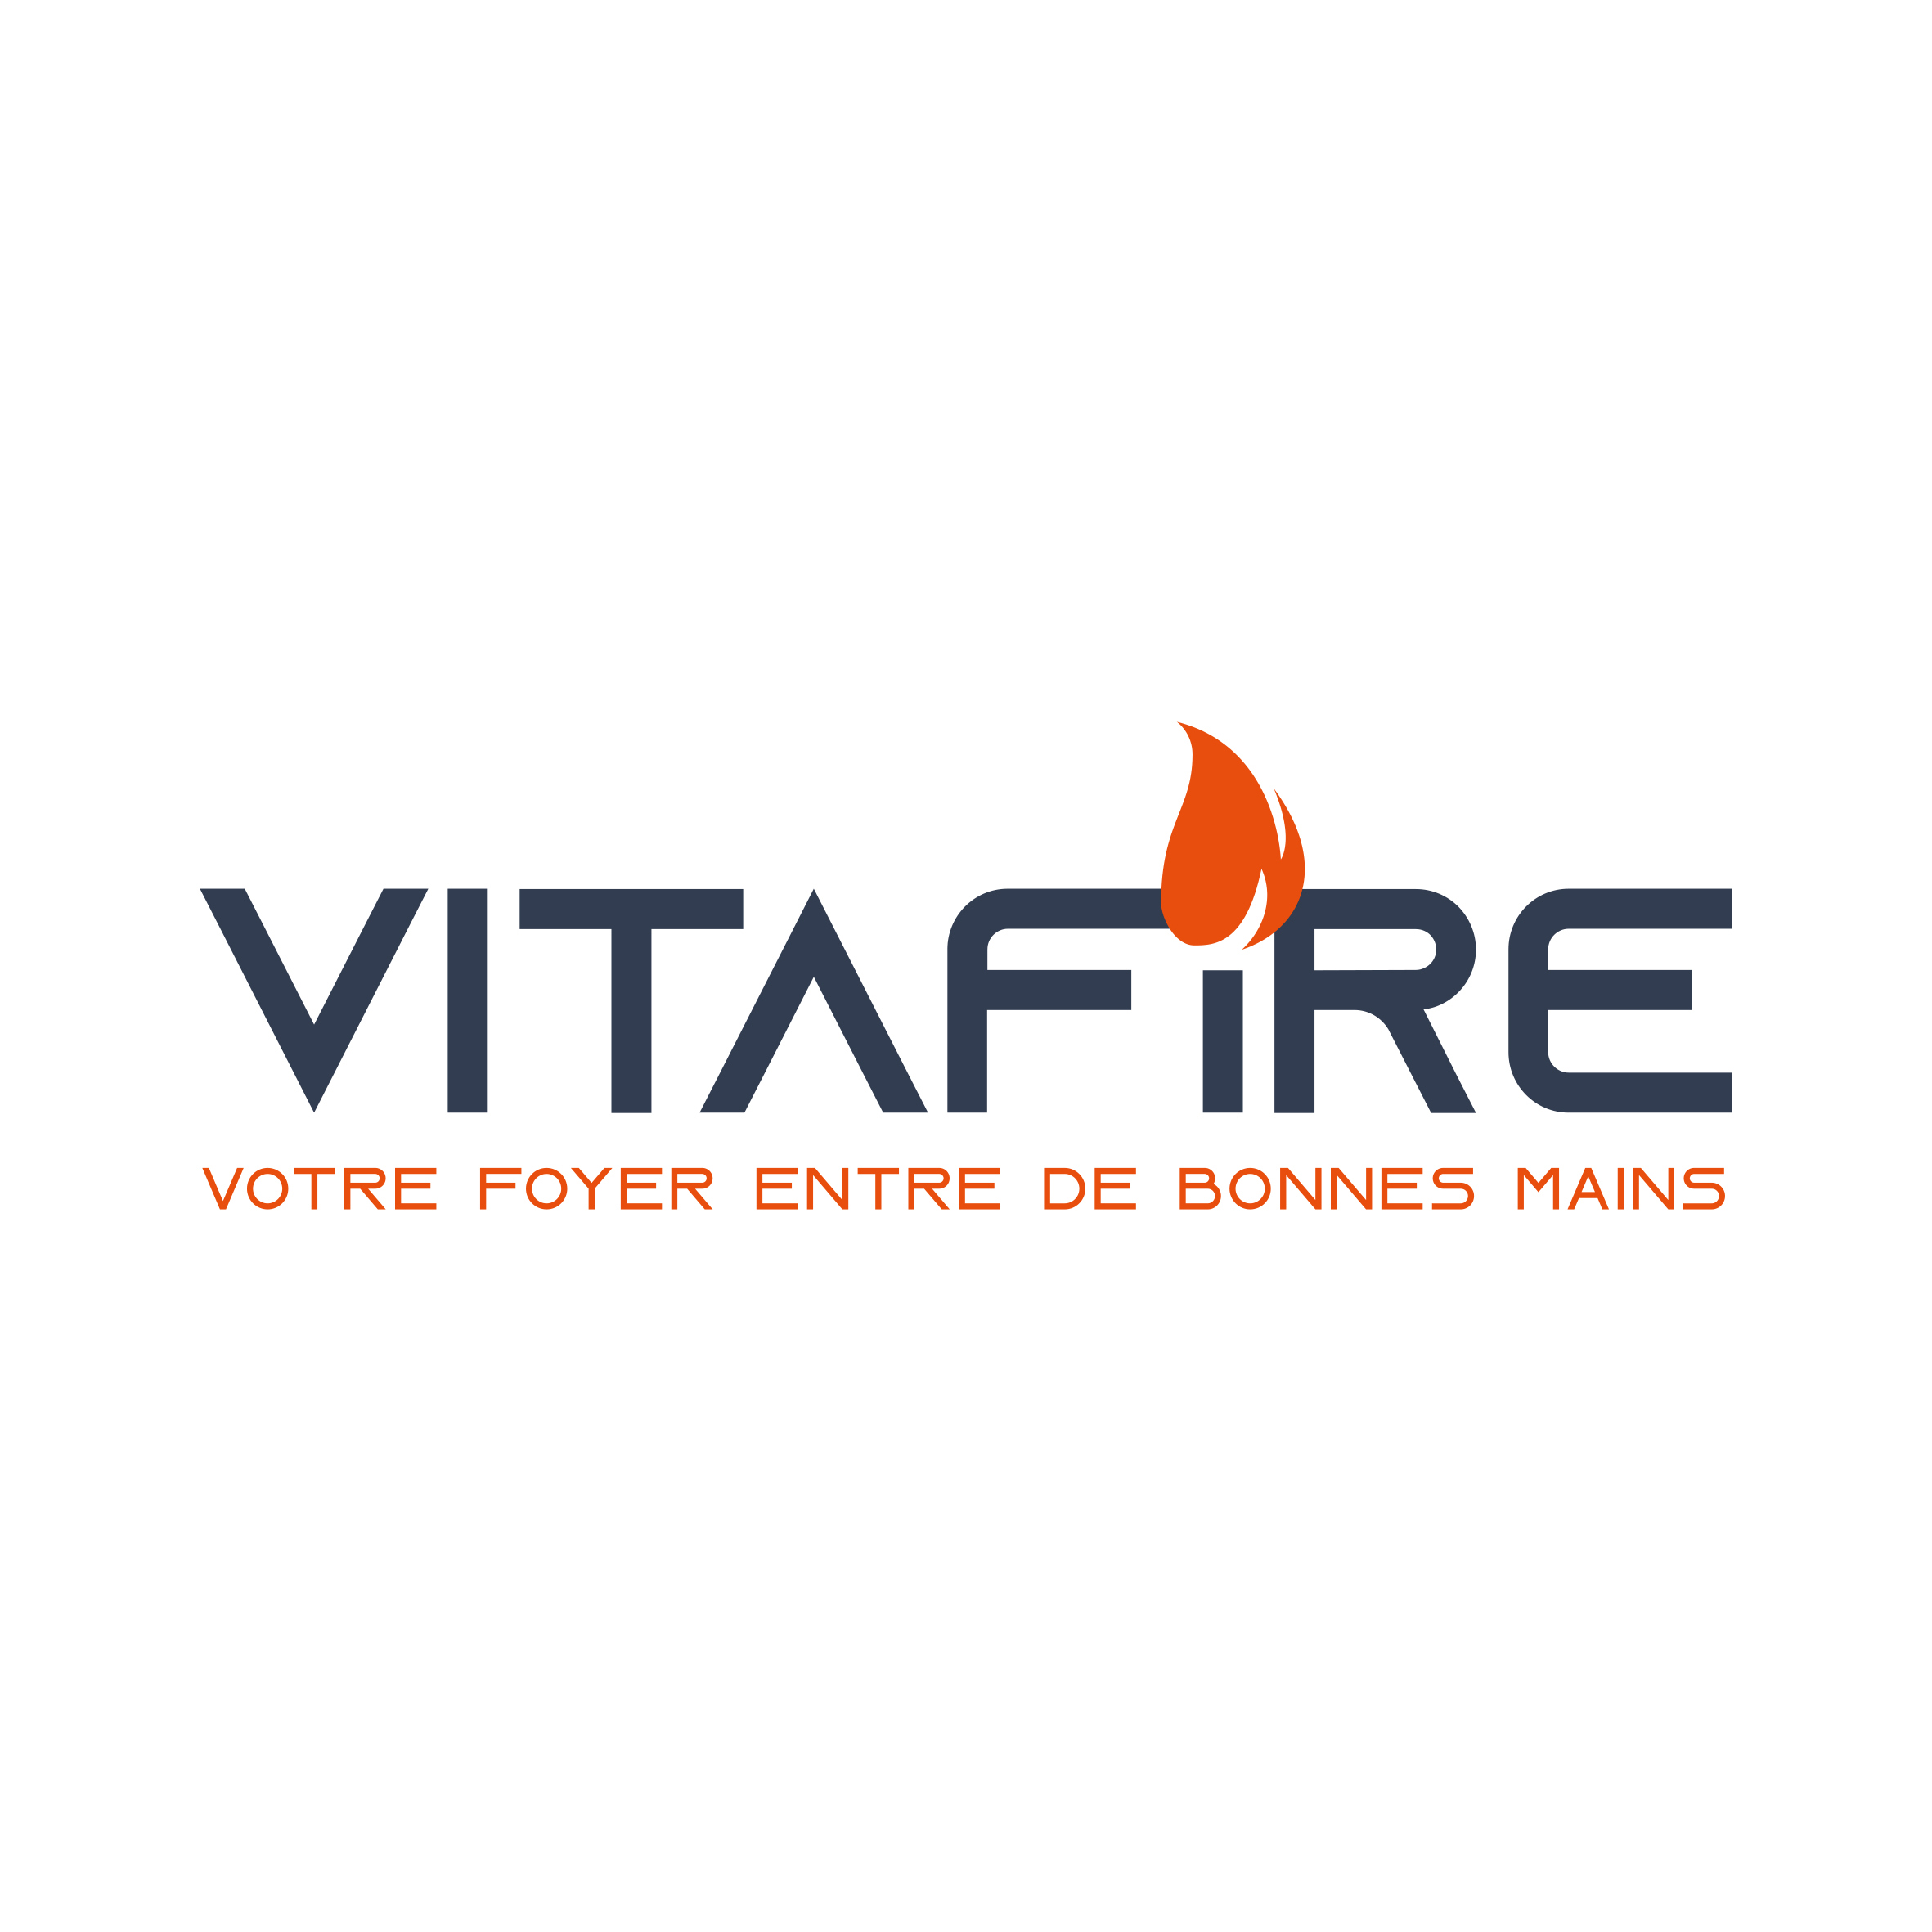 Vitafire Tours